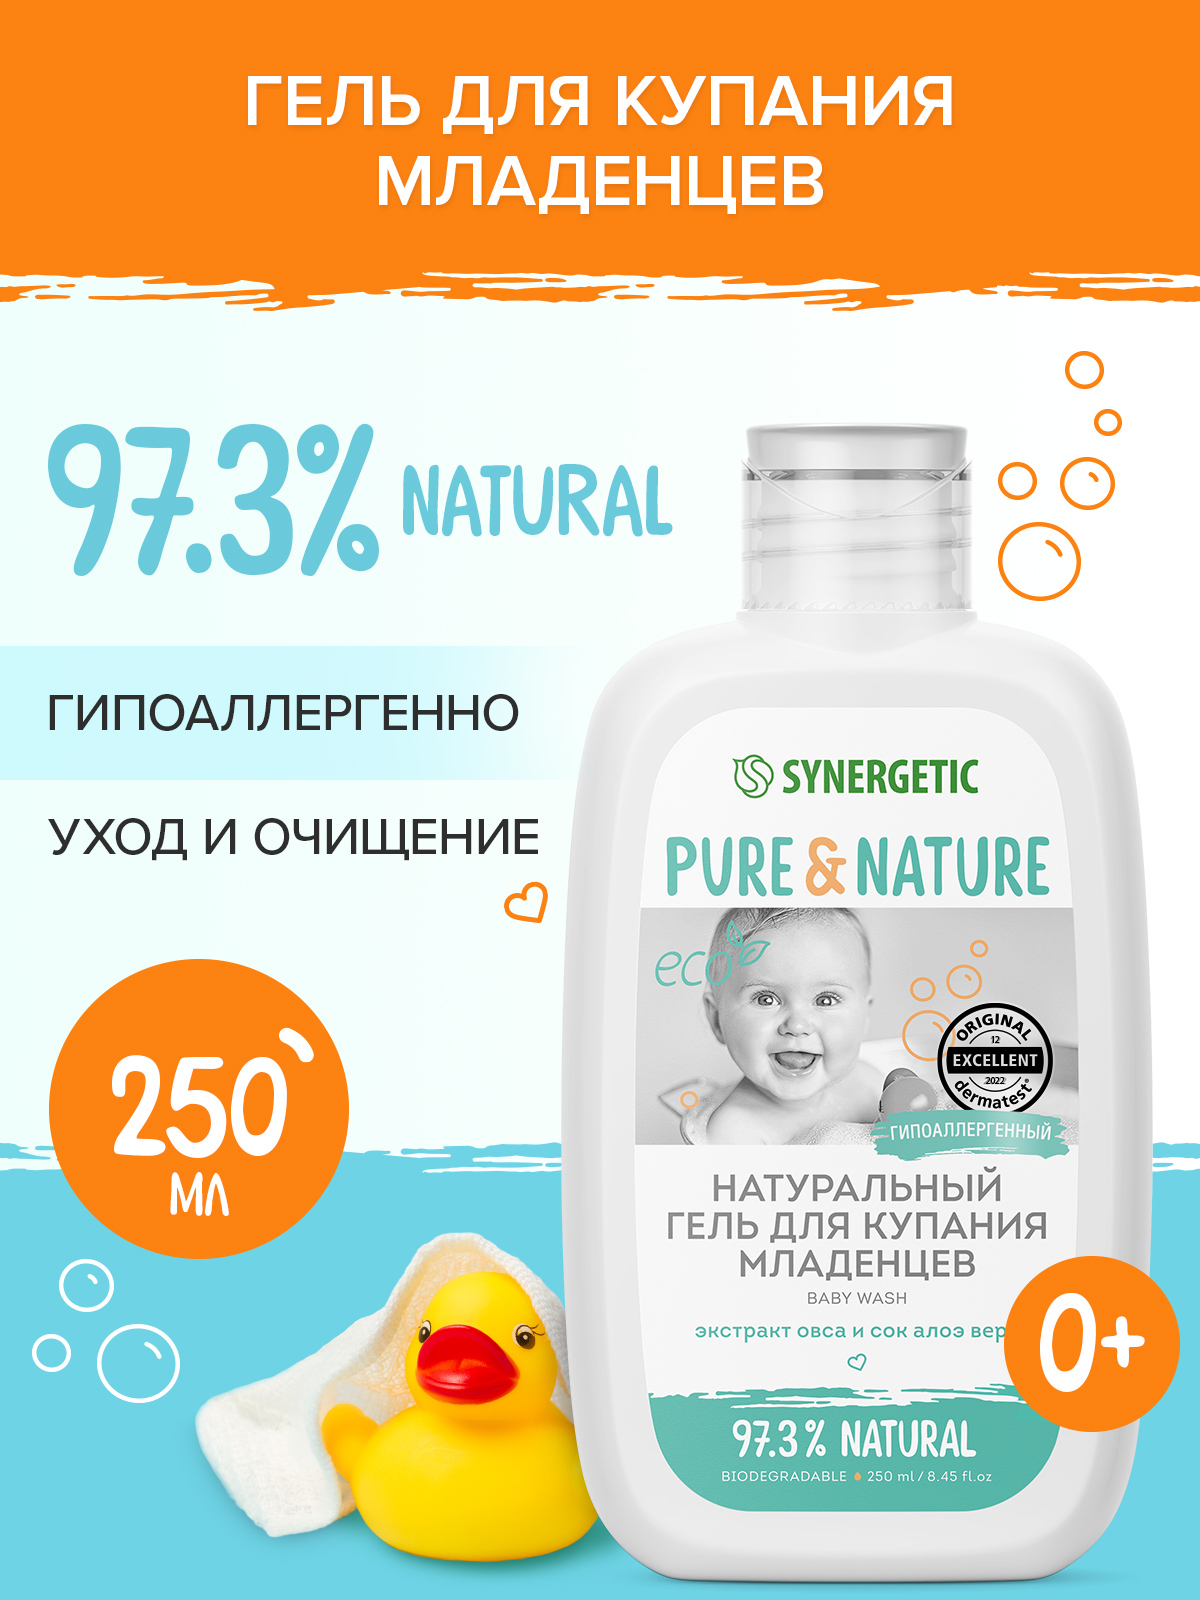 Натуральный гипоаллергенный гель для купания младенцев 0+ SYNERGETIC, 250мл натуральный гипоаллергенный детский шампунь гель для волос и тела synergetic 0 без слез